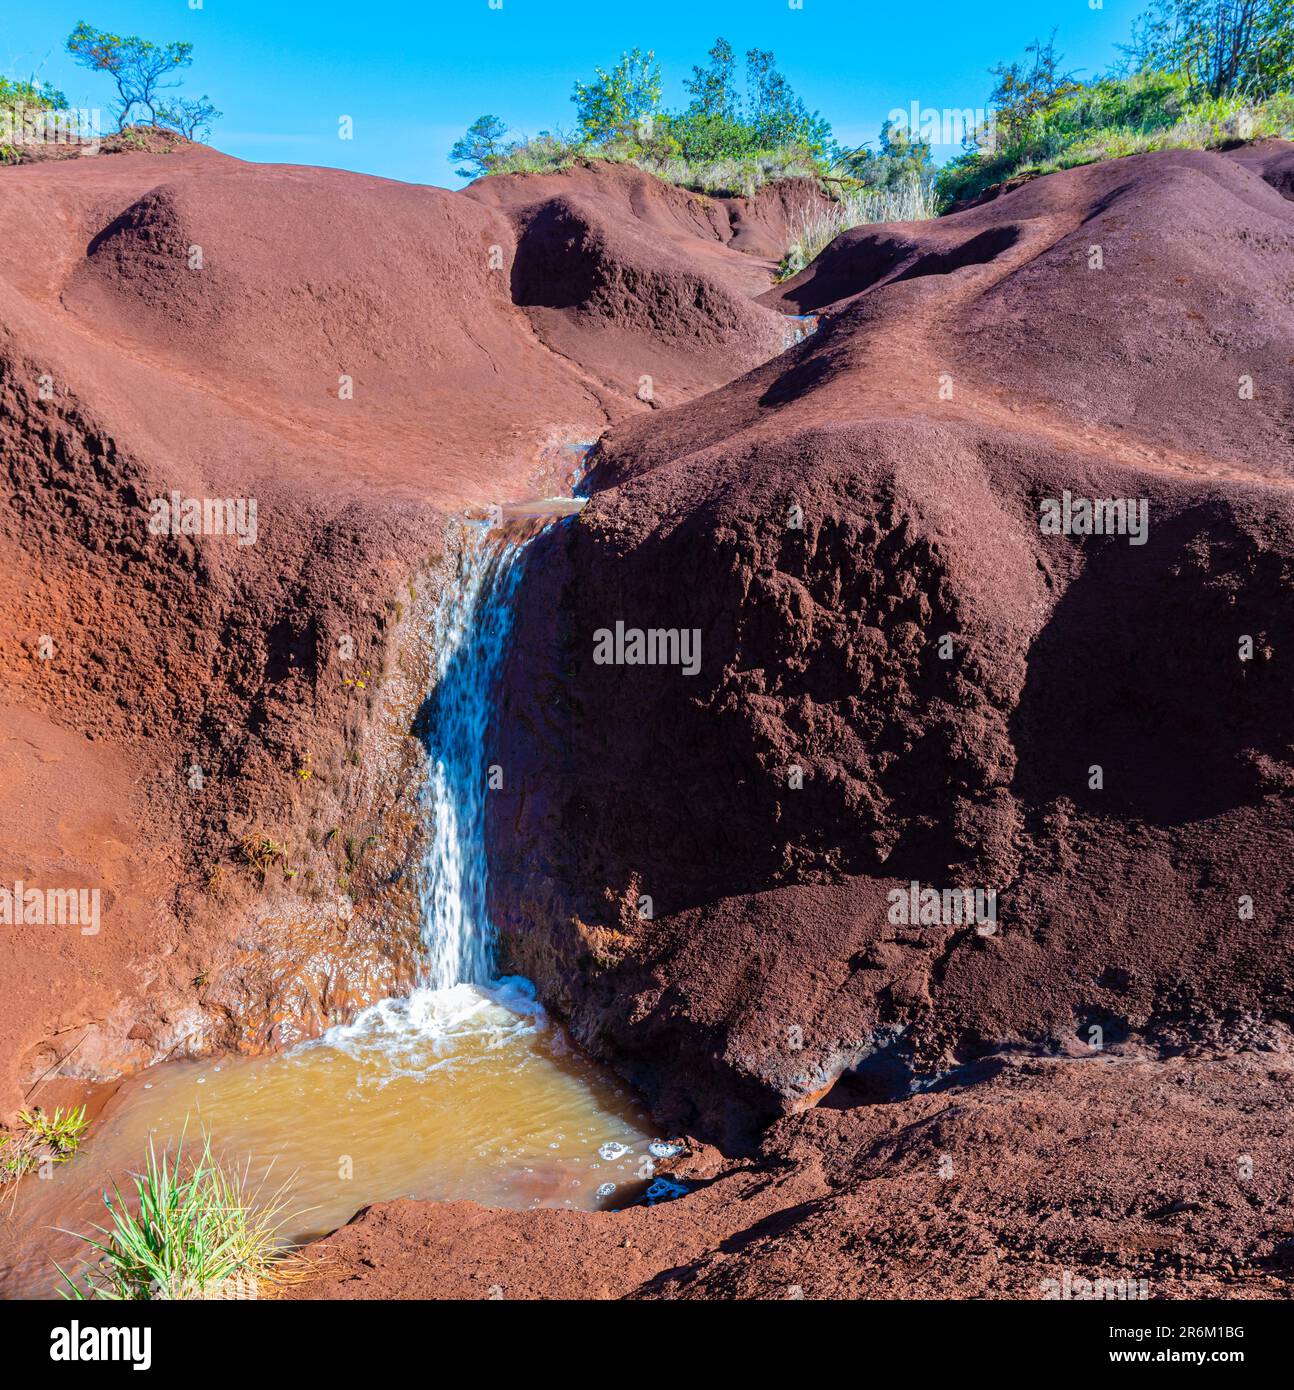 Chute d'eau Red Dirt, parc national de Waimea Canyon, Kauai, Hawaï, États-Unis Banque D'Images